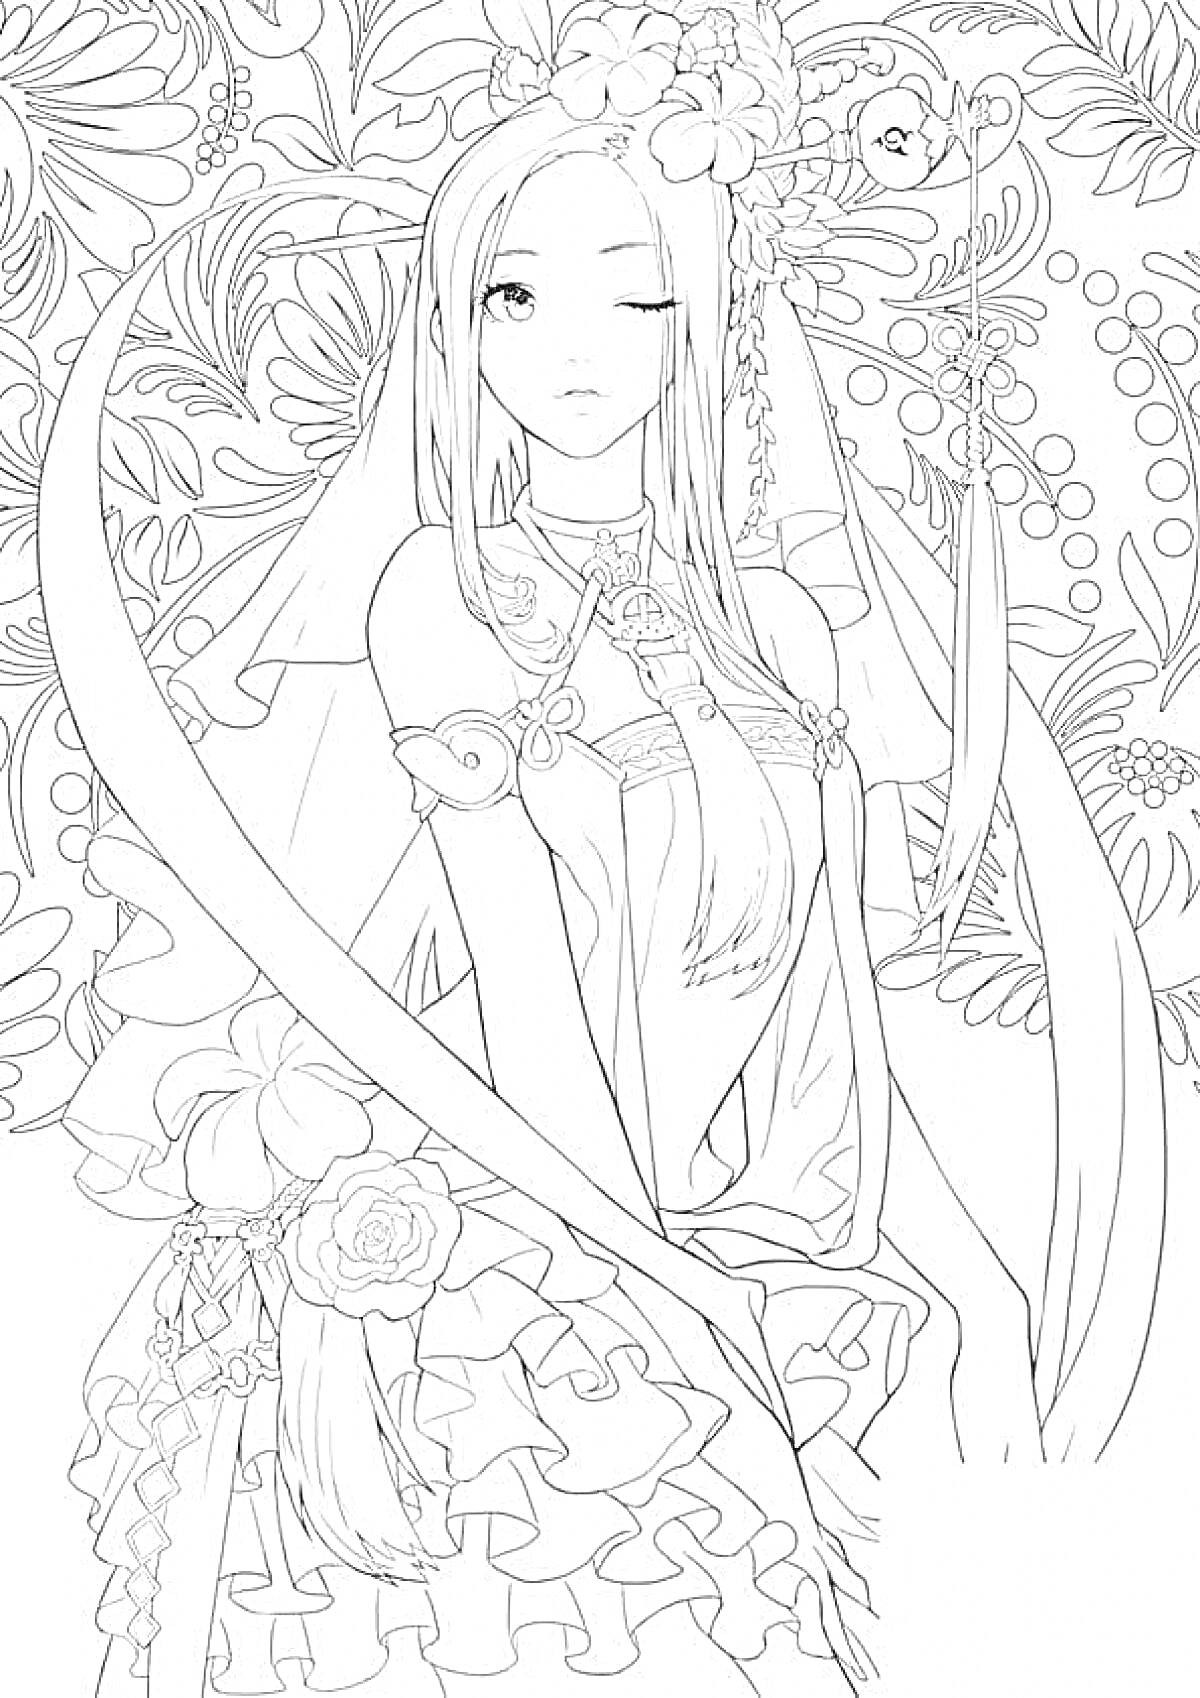 Раскраска Девушка в аниме стиле с цветами в волосах на фоне цветочного орнамента